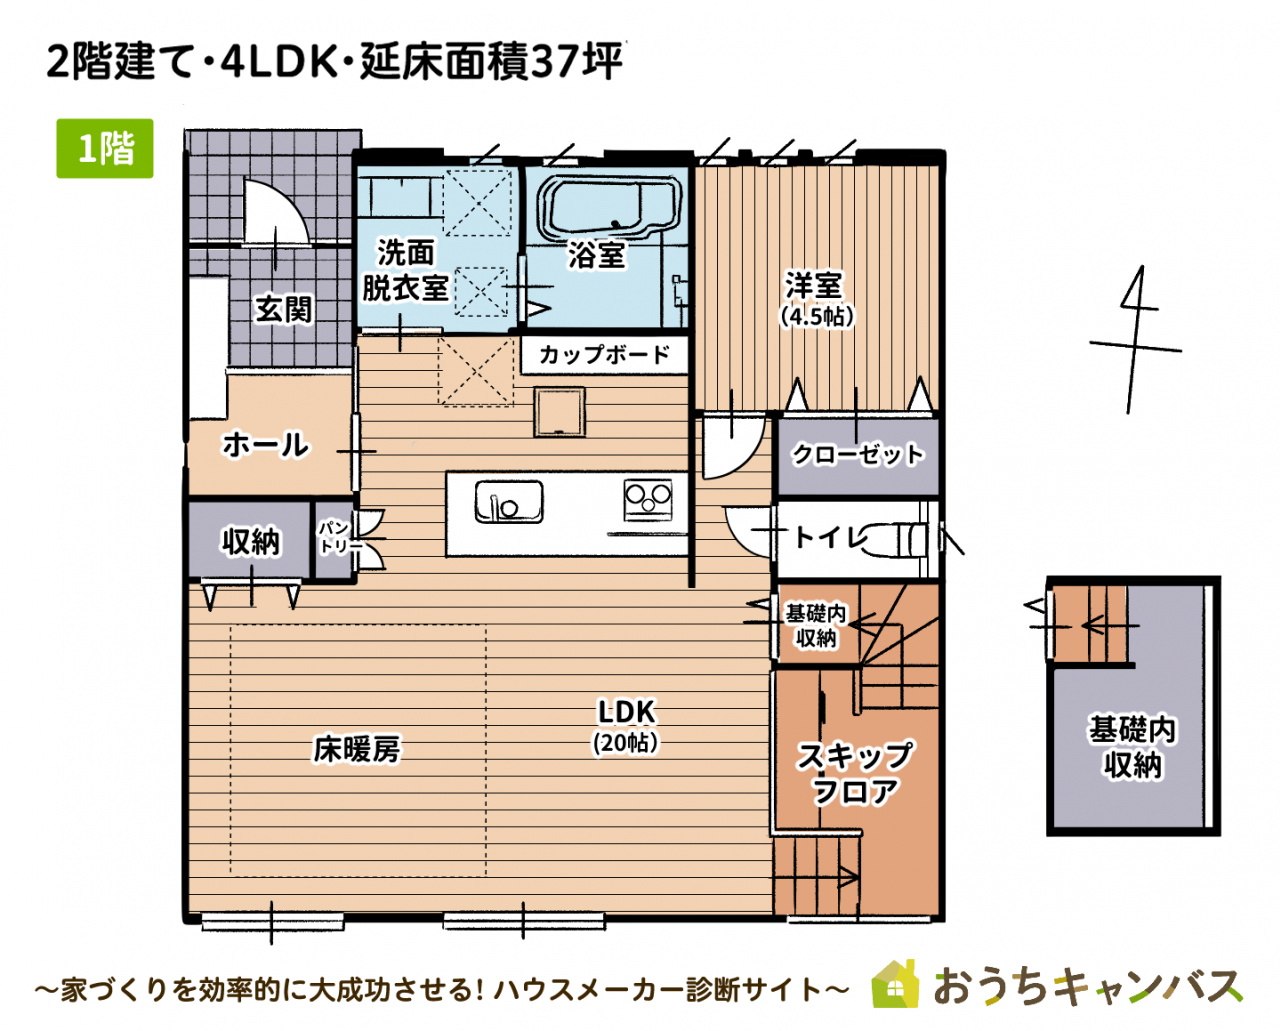 2階建て・4LDK・延べ床面積37坪の家1階